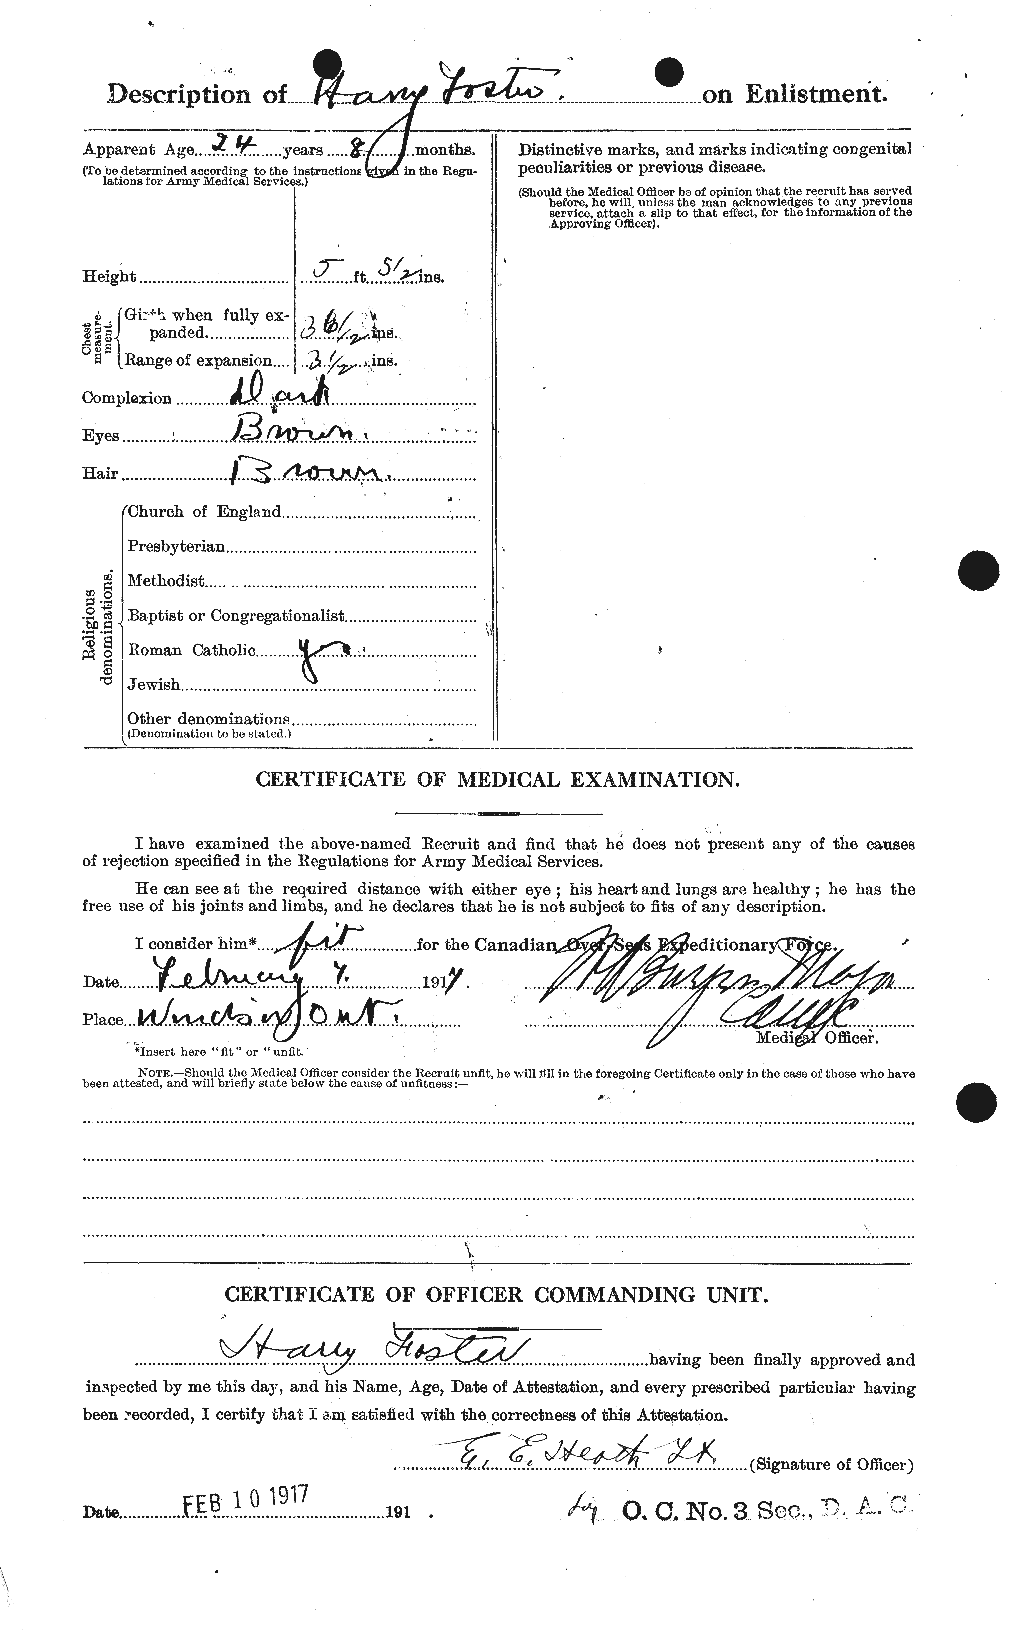 Dossiers du Personnel de la Première Guerre mondiale - CEC 330739b